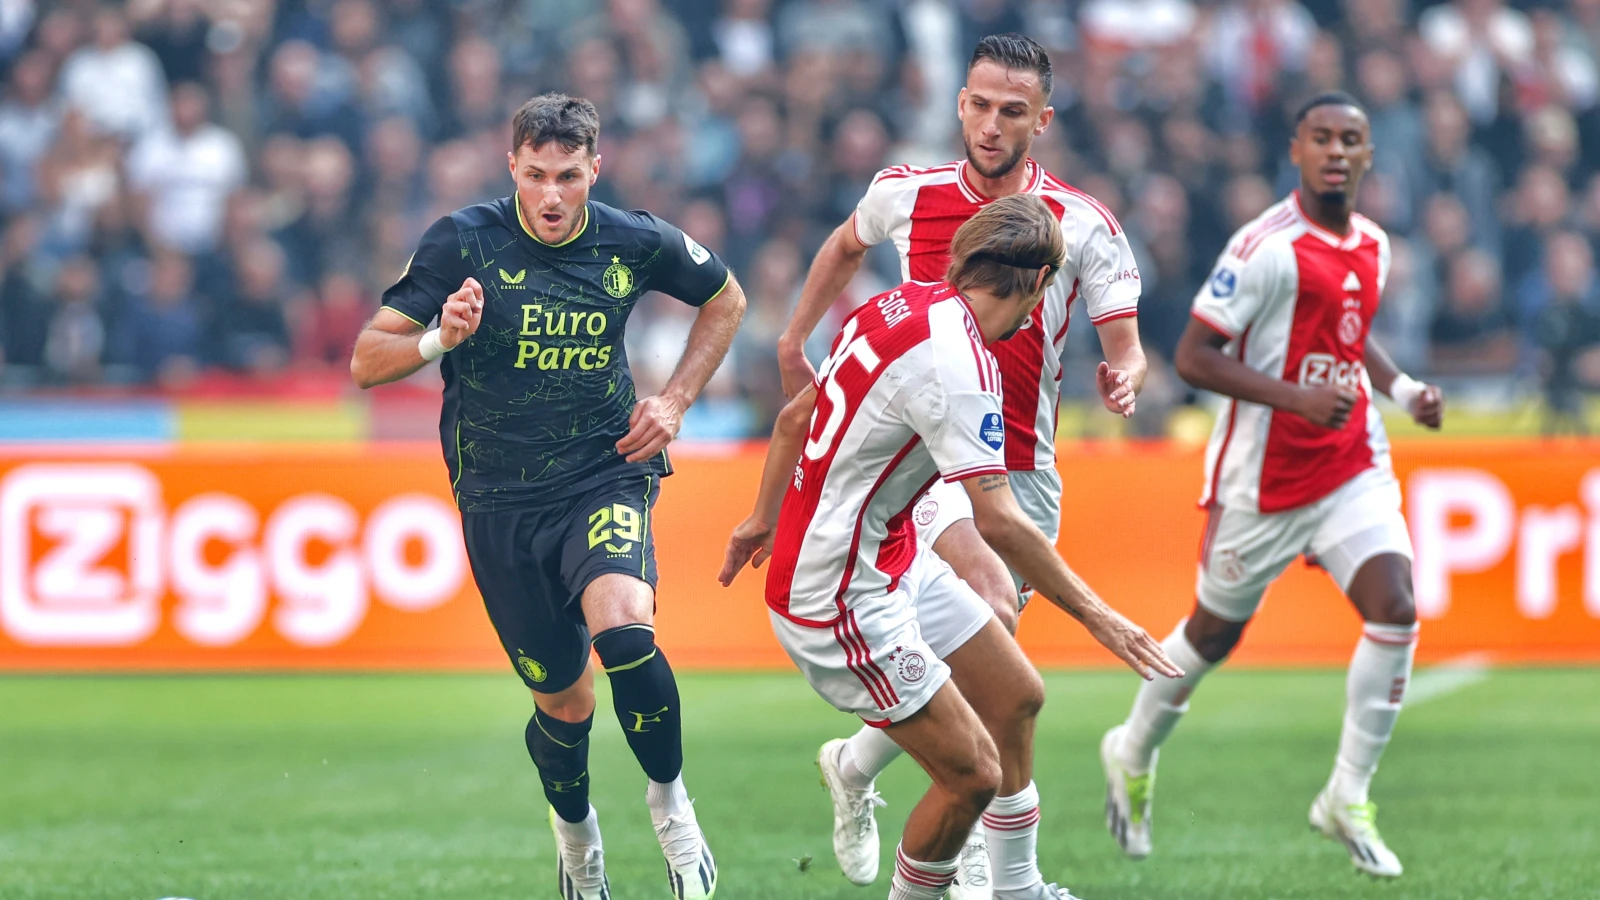 Wedstrijd tussen Ajax en Feyenoord op 27 september uitgespeeld